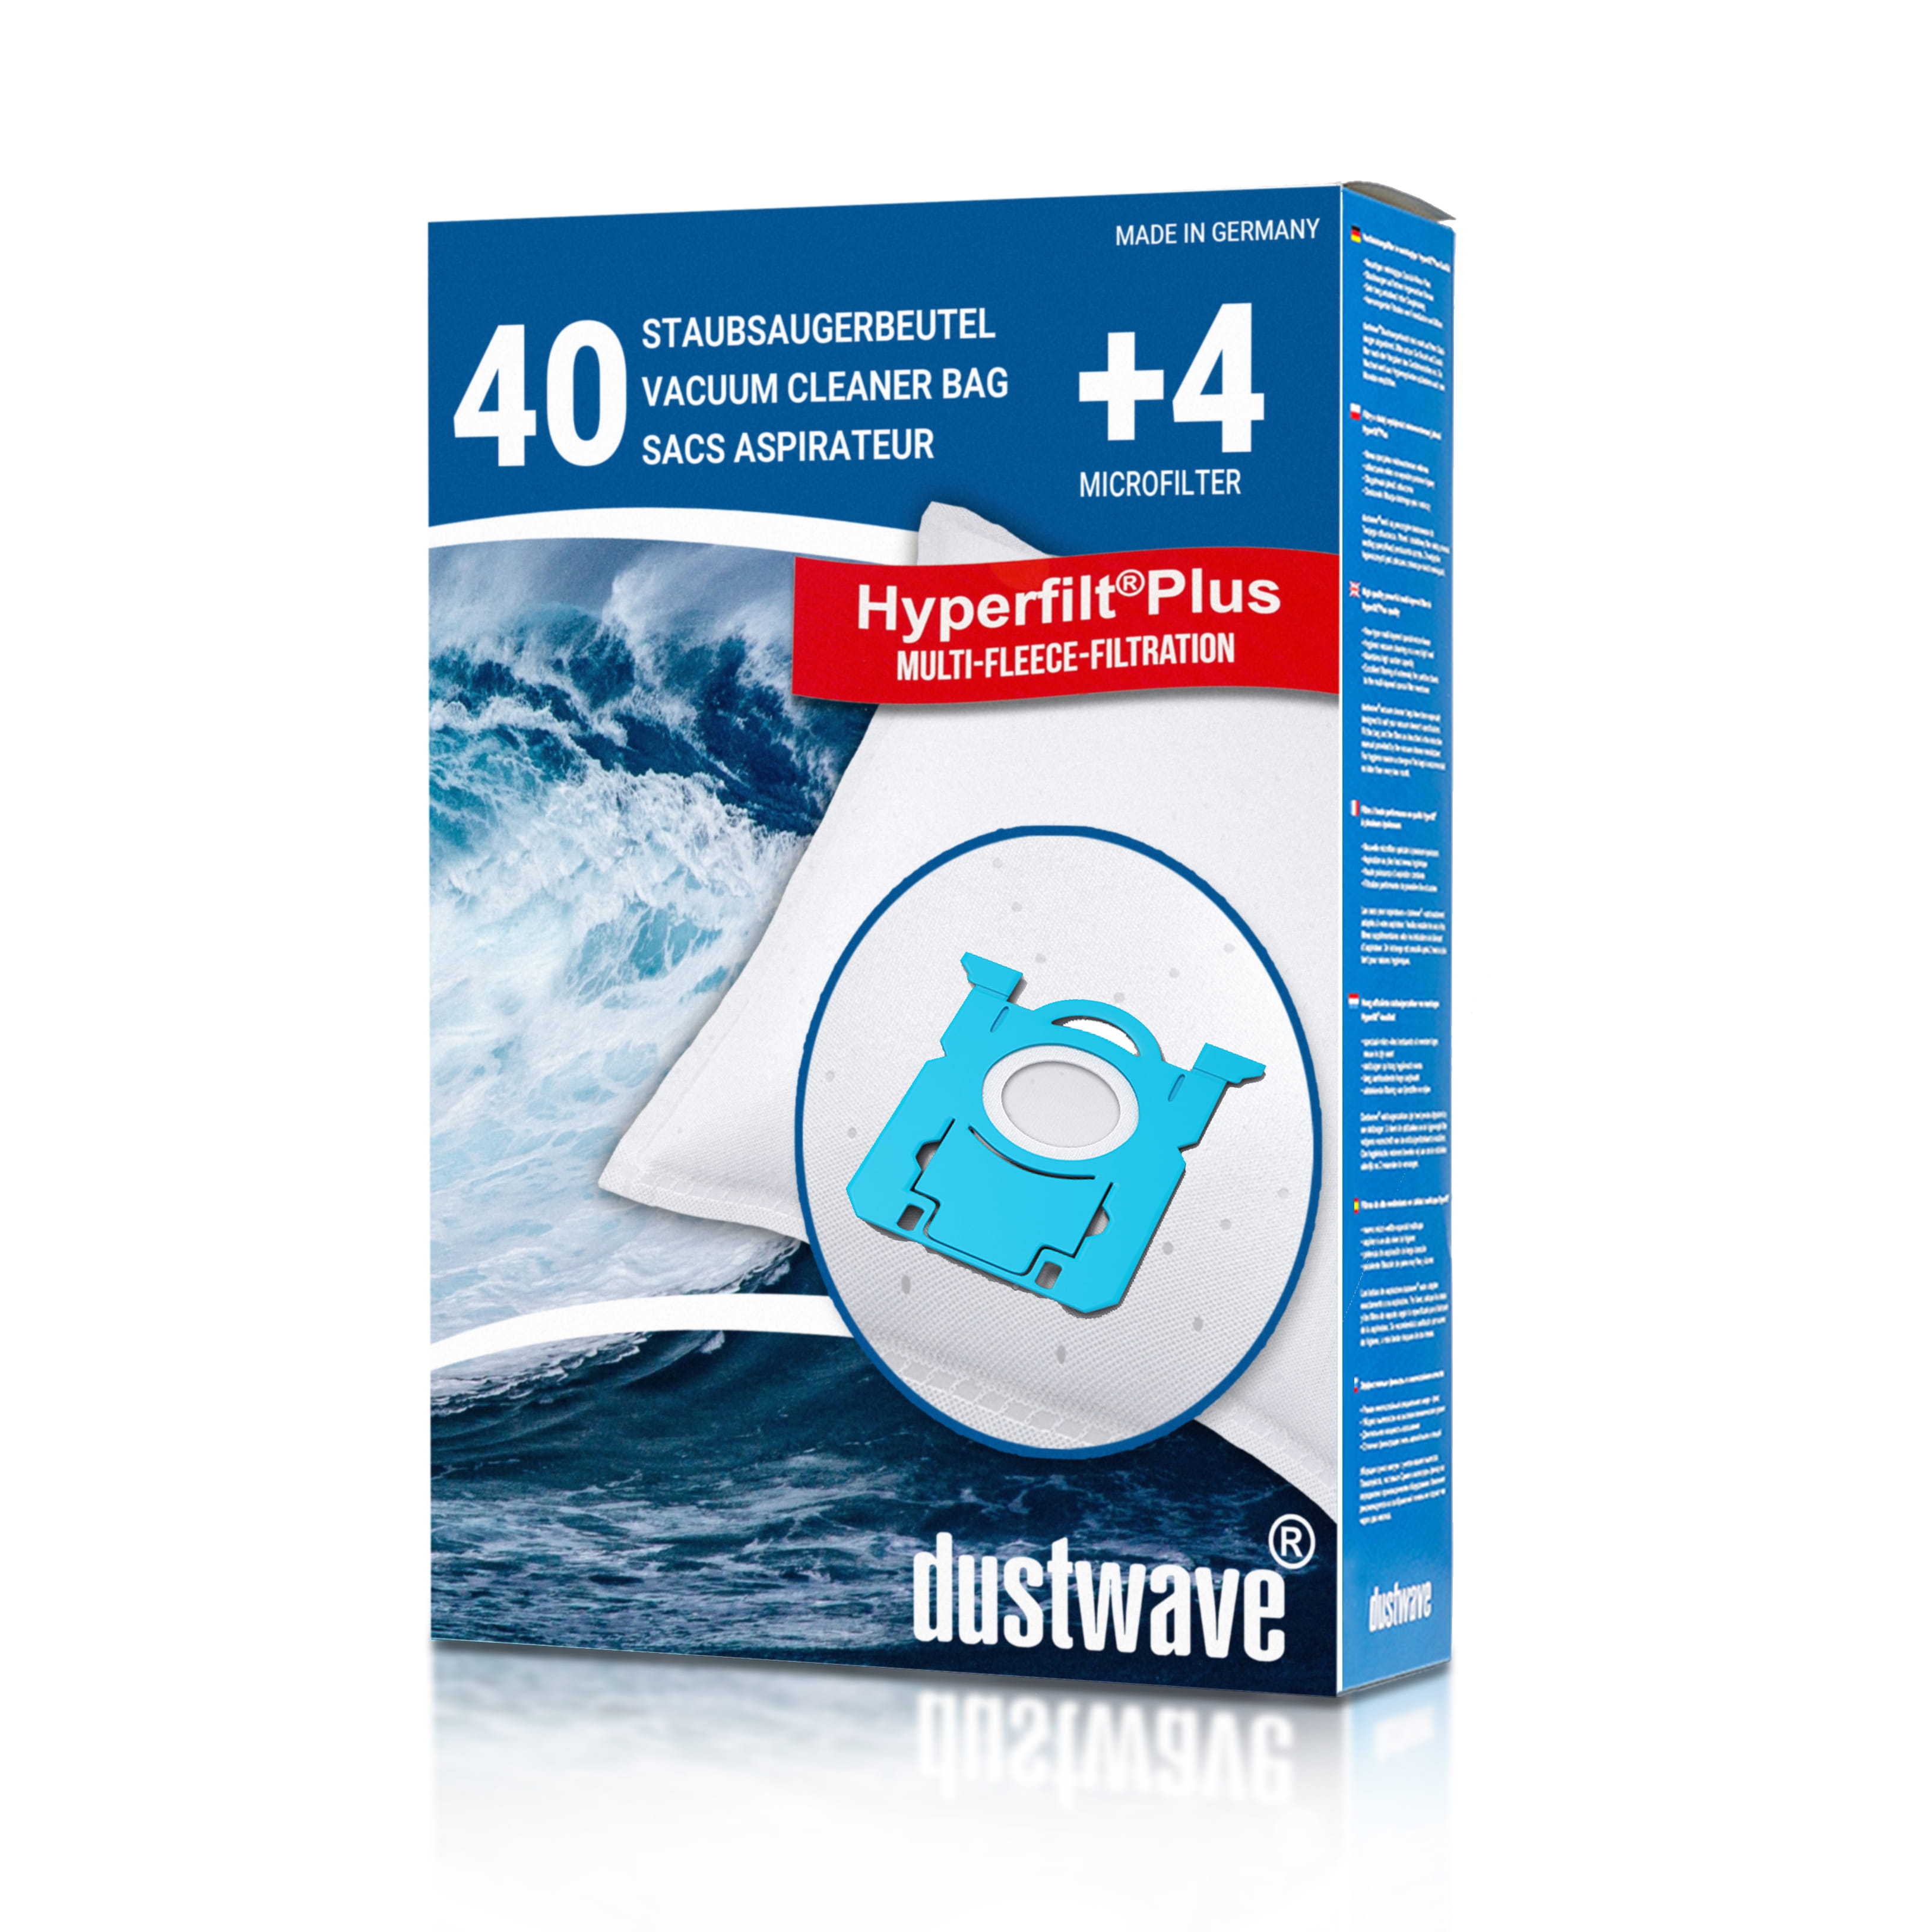 Dustwave® 40 Staubsaugerbeutel für AEG VX7-2-IW-S - hocheffizient, mehrlagiges Mikrovlies mit Hygieneverschluss - Made in Germany